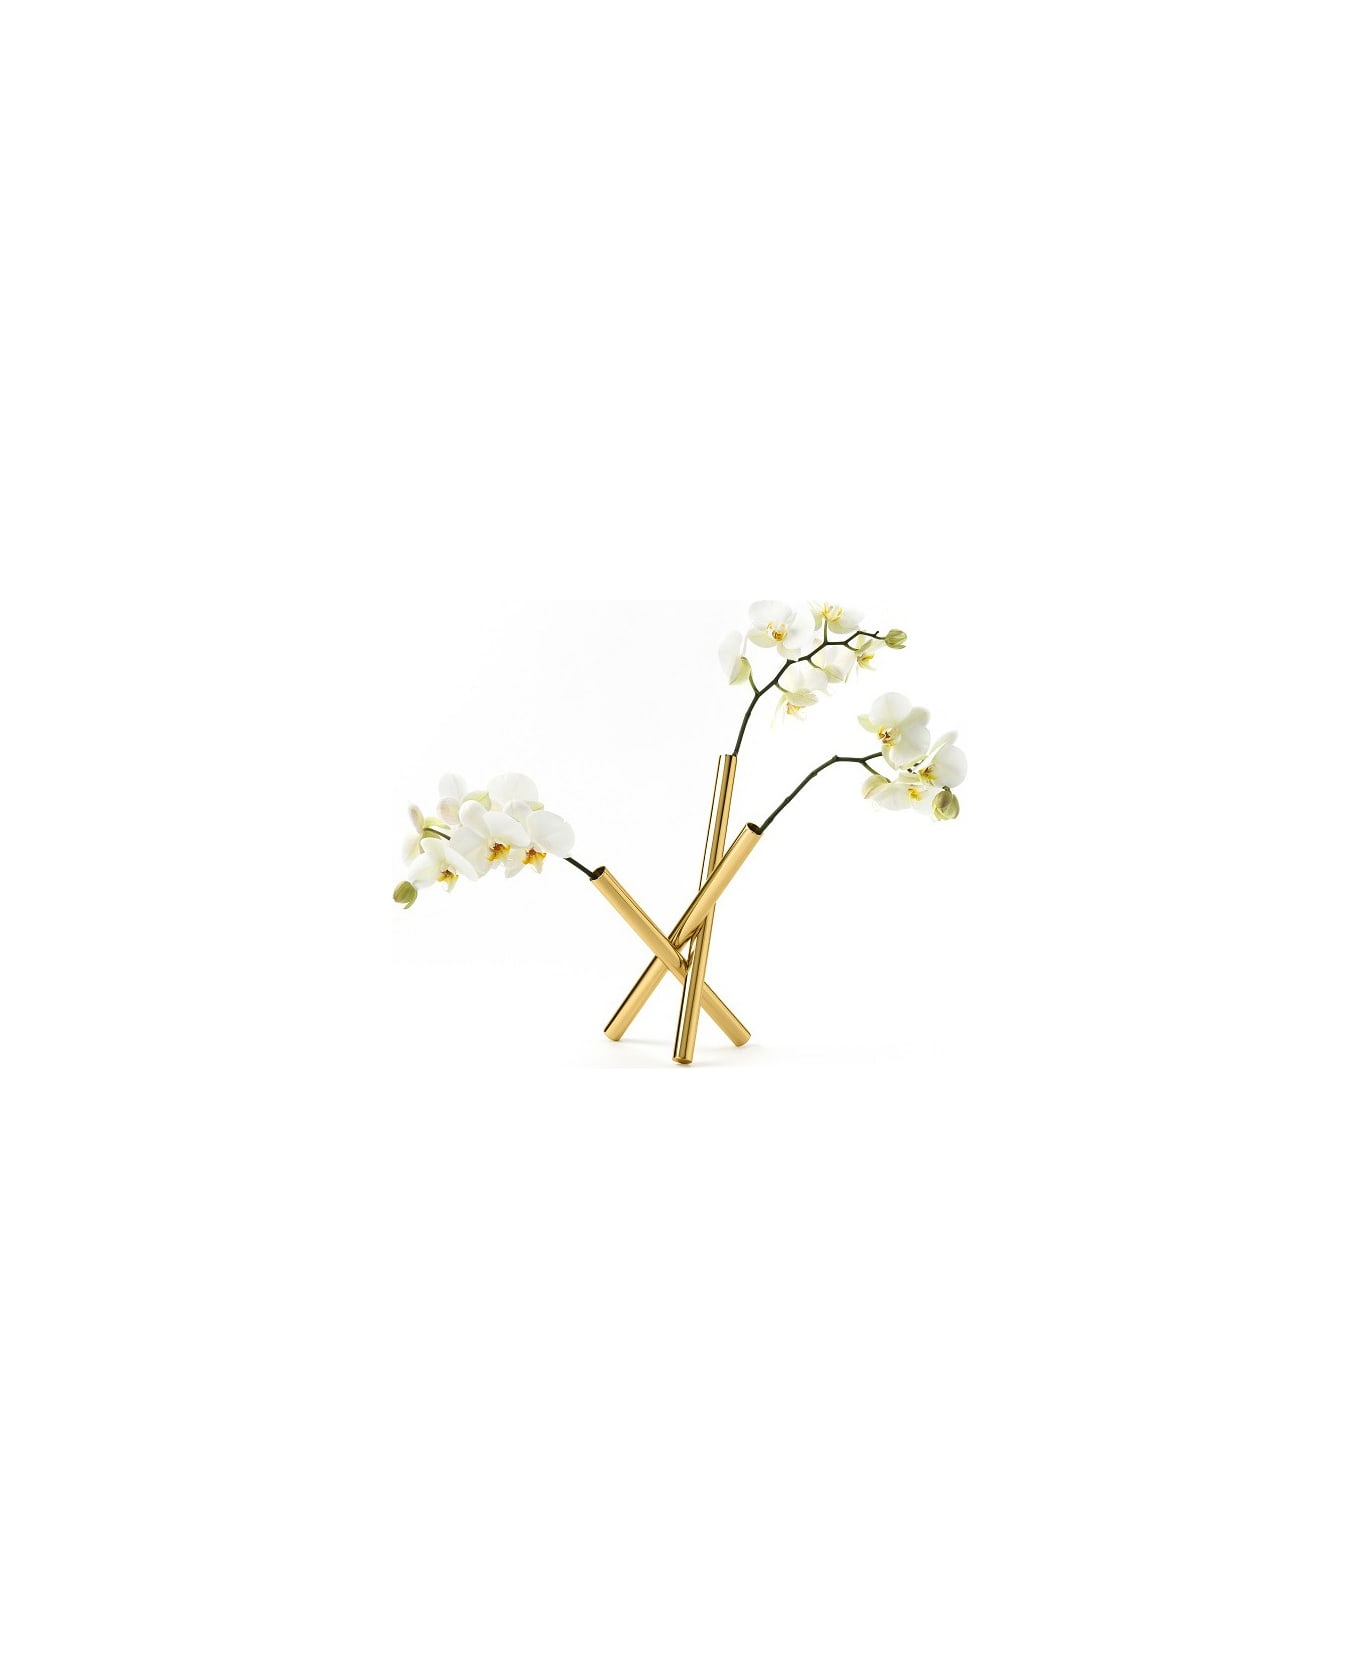 Ghidini 1961 Sticks - Flowers Pot Polished Brass - Polished brass 小物